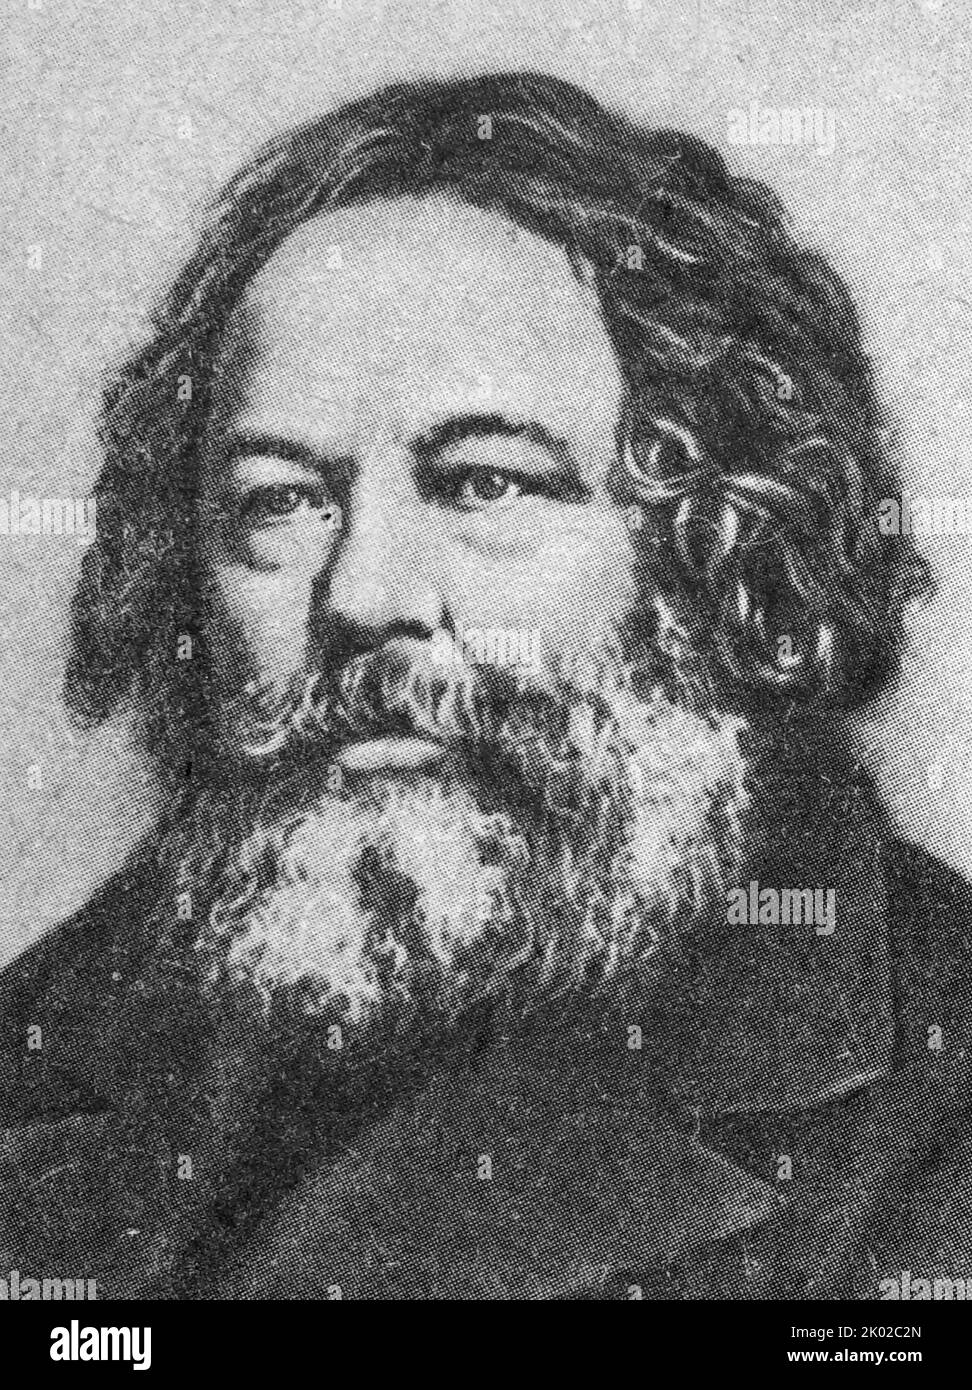 Michail Alexandrowitsch Bakunin (1814 - 1876); russischer revolutionärer Anarchist, Sozialist und Gründer des kollektivistischen Anarchismus. Er gilt als einer der einflussreichsten Persönlichkeiten des Anarchismus und als einer der wichtigsten Begründer der revolutionären sozialistischen und sozial anarchistischen Tradition Stockfoto